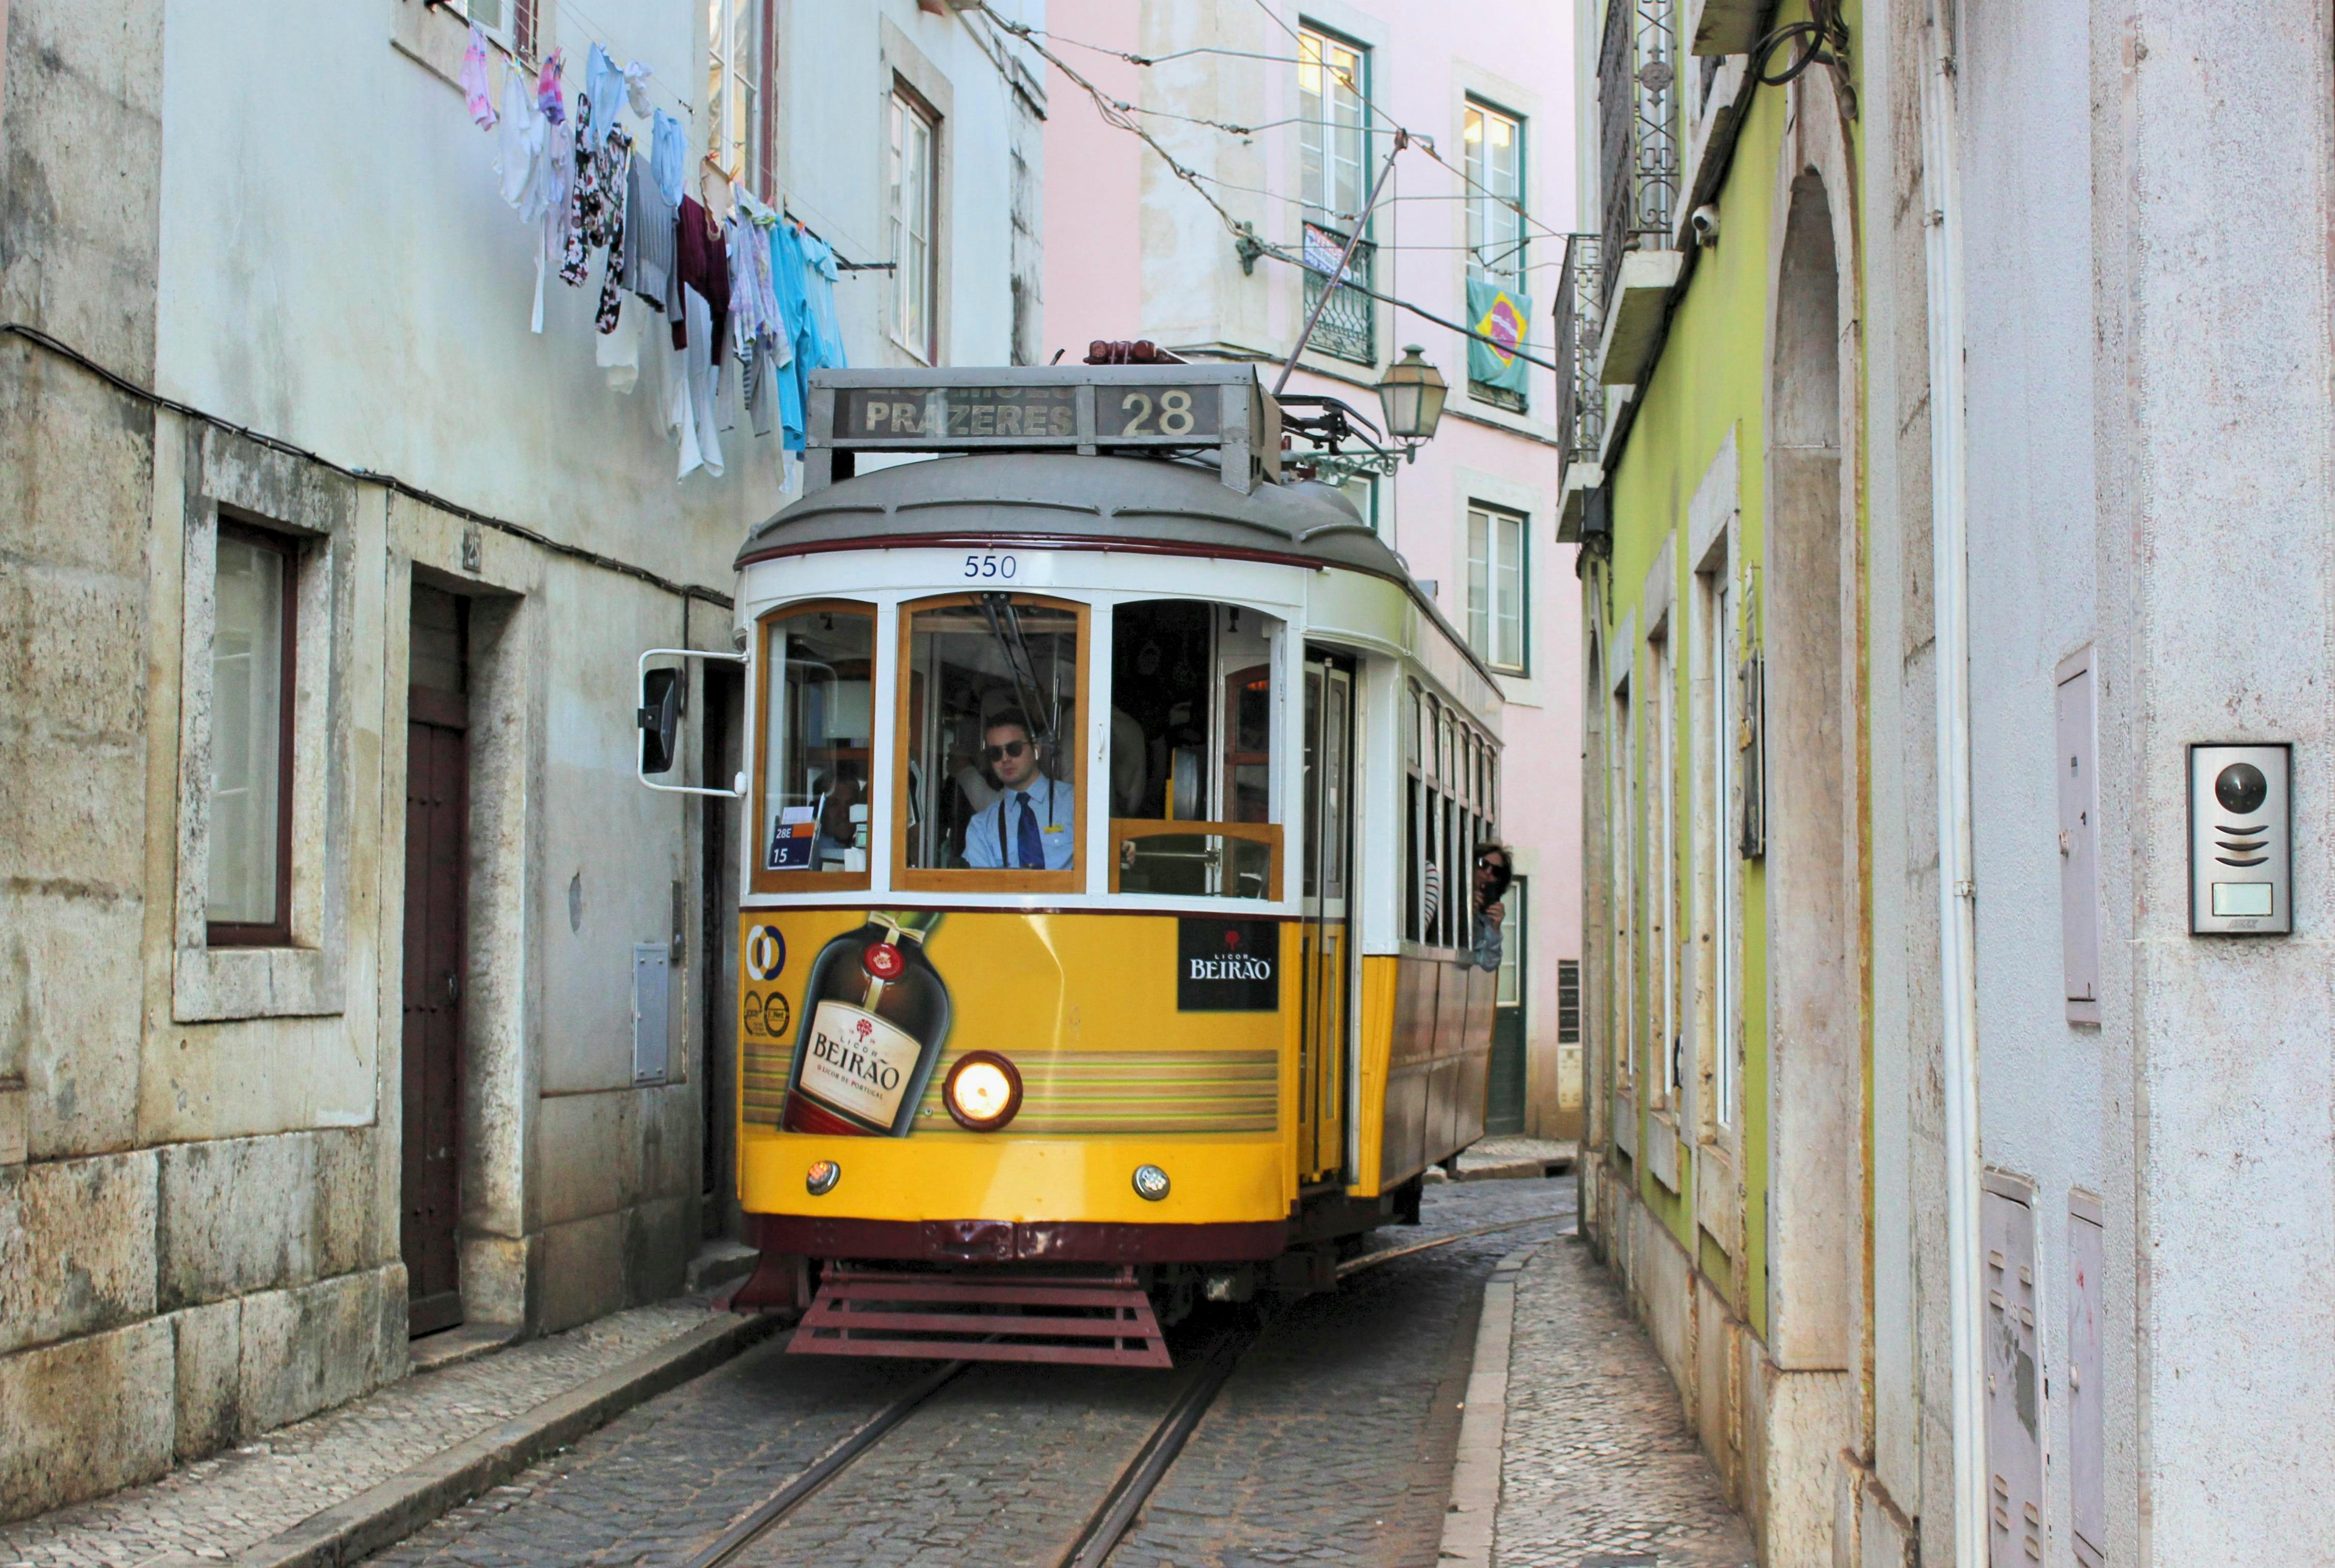 


<h3>1.1. Transports Publics</h3>
<p>Les <b>transports publics</b> au Portugal sont un choix privilégié pour les voyageurs soucieux de l’environnement et désireux d’explorer les villes en toute simplicité. Le pays dispose d’un réseau de bus, de trams et de métros bien développé dans ses principales agglomérations, facilitant ainsi la mobilité urbaine. Les voyageurs peuvent profiter d’un service fiable et accessible, idéal pour découvrir les attractions historiques et culturelles de chaque ville.</p>
<p>En utilisant les <i>transports publics</i>, vous pouvez également vous immerger dans la vie locale, rencontrer des habitants et découvrir des endroits authentiques que vous pourriez manquer autrement. De plus, c’est une option respectueuse de l’environnement, contribuant ainsi à la durabilité de vos voyages. Explorez notre guide détaillé pour tirer le meilleur parti des transports en commun au Portugal.</p>
<h3>1.2. Location de Voitures</h3>
<p>La <b>location de voitures</b> offre une flexibilité totale pour votre voyage au Portugal. Vous avez la possibilité de découvrir les joyaux cachés de la campagne, de visiter des régions éloignées et de suivre votre propre itinéraire. Les agences de location sont nombreuses et proposent une large gamme de véhicules pour répondre à vos besoins spécifiques, que ce soit une petite voiture citadine, un véhicule tout-terrain pour l’aventure ou une voiture de luxe pour un voyage confortable.</p>
<p>En optant pour la <i>location de voitures</i>, vous avez la liberté de partir à l’aventure à votre rythme, de vous arrêter où bon vous semble et de créer des souvenirs inoubliables. Cependant, il est essentiel de comprendre les règles de conduite locales, les exigences en matière de permis de conduire et les considérations relatives à l’assurance. Notre guide détaillé vous aidera à planifier votre expérience de location de voitures au Portugal en toute confiance.</p>
<h3>1.3. Vélos et Trottinettes Électriques</h3>
<p>L’utilisation de <b>vélos et trottinettes électriques</b> gagne en popularité au Portugal, offrant une manière écologique et pratique de se déplacer dans les villes. Ces moyens de transport vous permettent de profiter de la mobilité tout en réduisant votre empreinte carbone. Vous pouvez explorer les quartiers historiques, longer les côtes pittoresques et découvrir les parcs urbains à votre rythme.</p>
<p>Les <i>vélos et trottinettes électriques</i> sont particulièrement adaptés pour les voyageurs qui recherchent une expérience immersive et active. Ils sont faciles à louer et à utiliser, avec des bornes de location dispersées dans de nombreuses villes. Découvrez comment tirer le meilleur parti de cette option de transport respectueuse de l’environnement grâce à notre guide pratique.</p>
<h3>1.4. Covoiturage</h3>
<p>Le <b>covoiturage</b> est une option économique et conviviale pour se déplacer au Portugal. Il permet de partager les frais de voyage avec d’autres personnes, de rencontrer des locaux et de tisser des liens sociaux pendant vos déplacements. De nombreuses plateformes en ligne facilitent la mise en relation des conducteurs et des passagers, ce qui rend cette option de plus en plus populaire.</p>
<p>Le <i>covoiturage</i> est également un excellent moyen de réduire l’empreinte carbone de vos voyages, en limitant le nombre de véhicules sur la route. Si vous êtes ouvert à de nouvelles rencontres et que vous souhaitez économiser de l’argent tout en explorant le Portugal, consultez notre guide pour tout savoir sur le covoiturage dans le pays.</p>
<p> » /><br />
Dans le cadre de notre exploration des différentes facettes du <b>transport au Portugal</b>, il est essentiel de commencer par examiner en détail les nombreuses options à disposition. Ce chapitre, intitulé « 1. Les Options de Transport au Portugal », constitue la base de votre compréhension des choix de déplacement dans ce magnifique pays. Le Portugal, avec sa riche <b><a href=